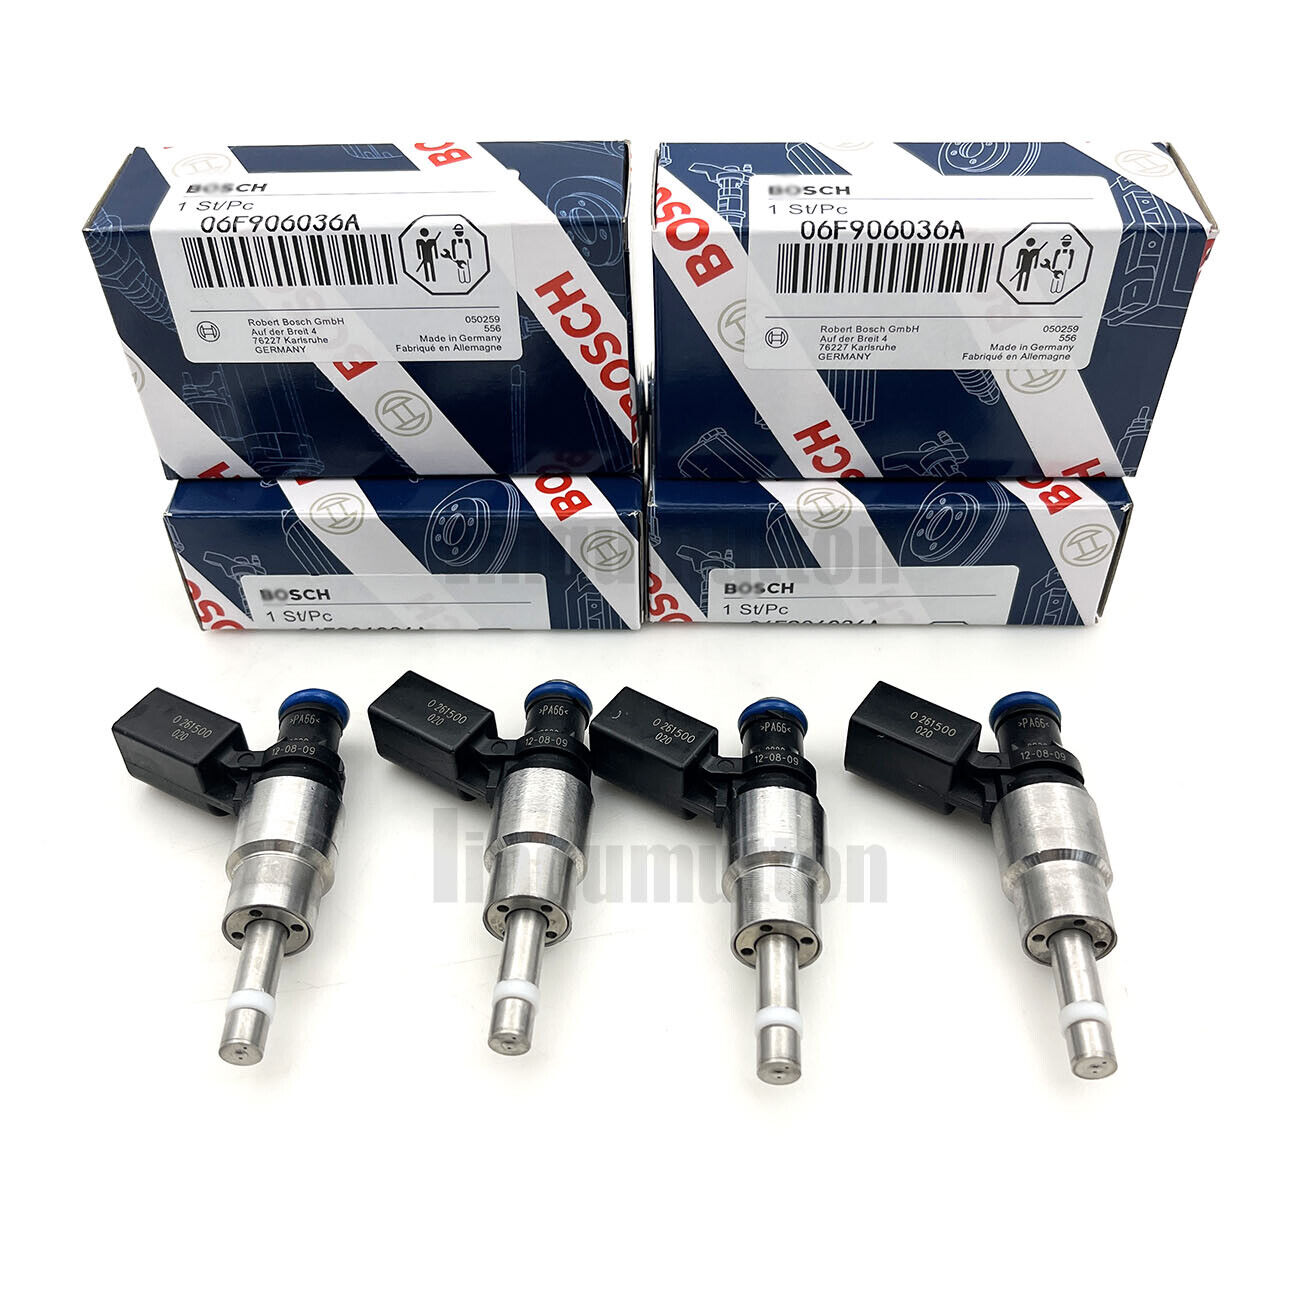 4PCS Fuel Injectors Fits For 05-09 Audi A3 A4 TT VW GTI Jetta 2.0L 06F906036A